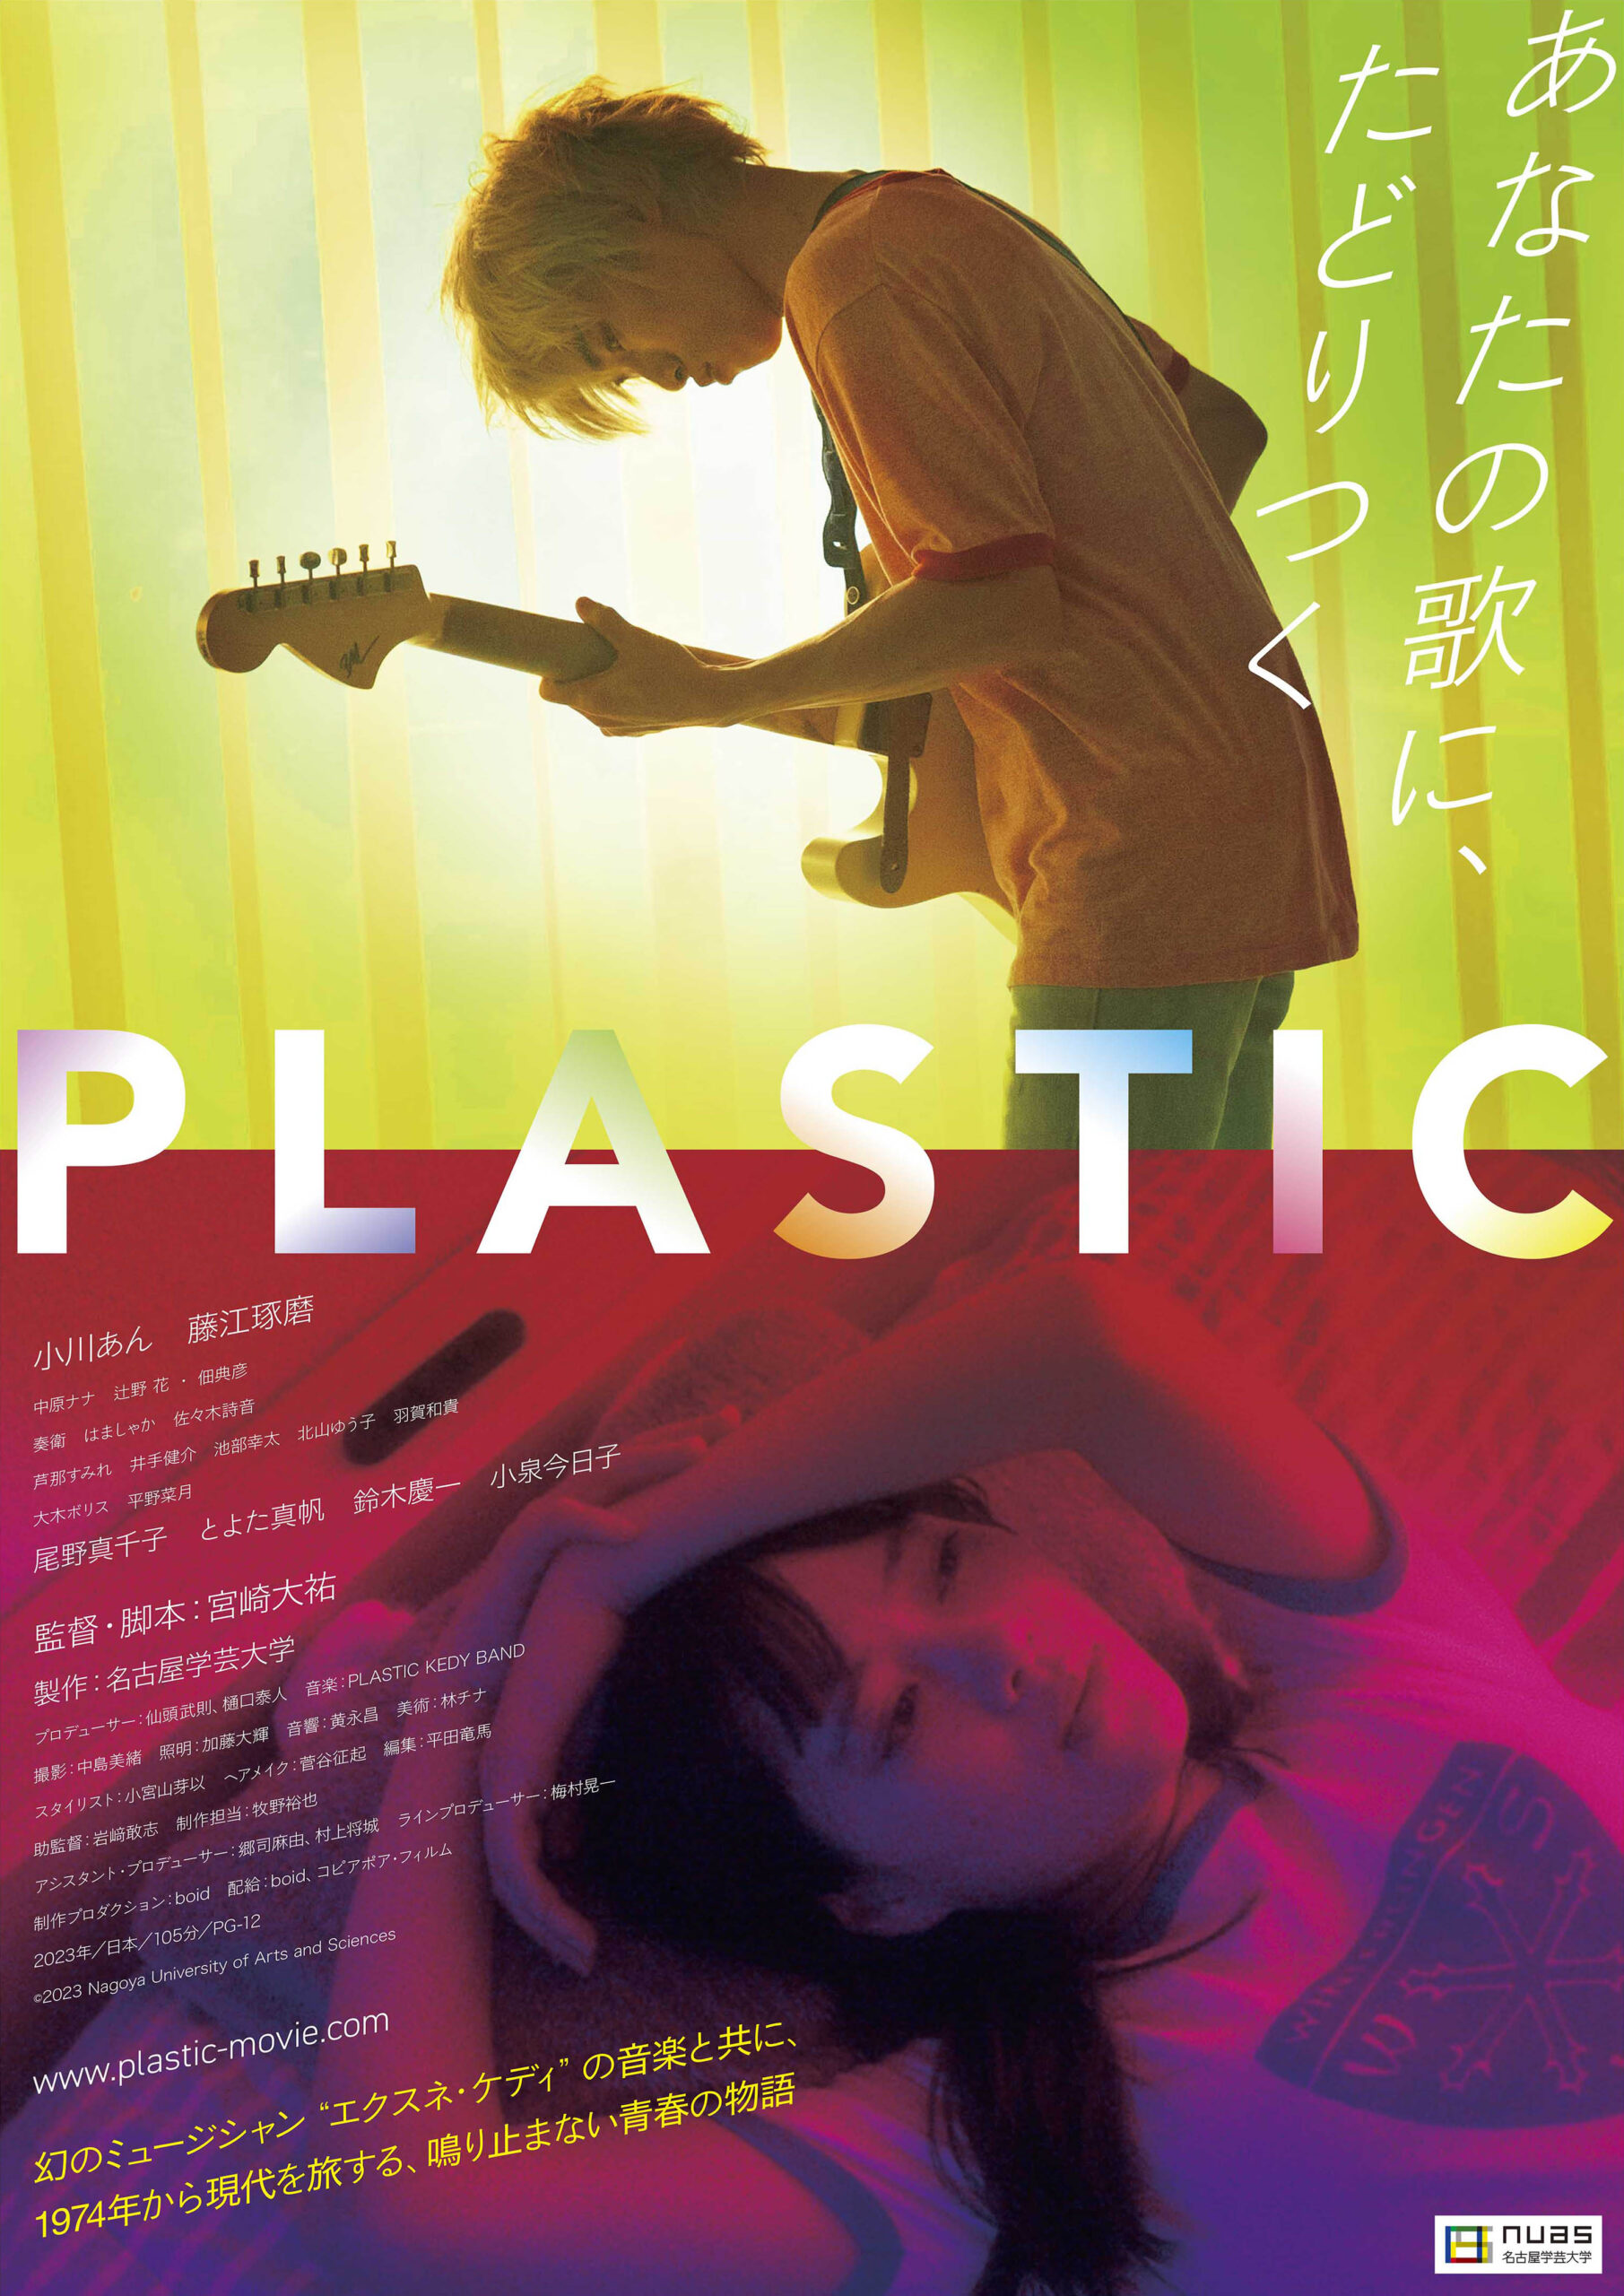 映画『PLASTIC』「こんな時代もあったよねと…」宮崎大祐監督インタビュー